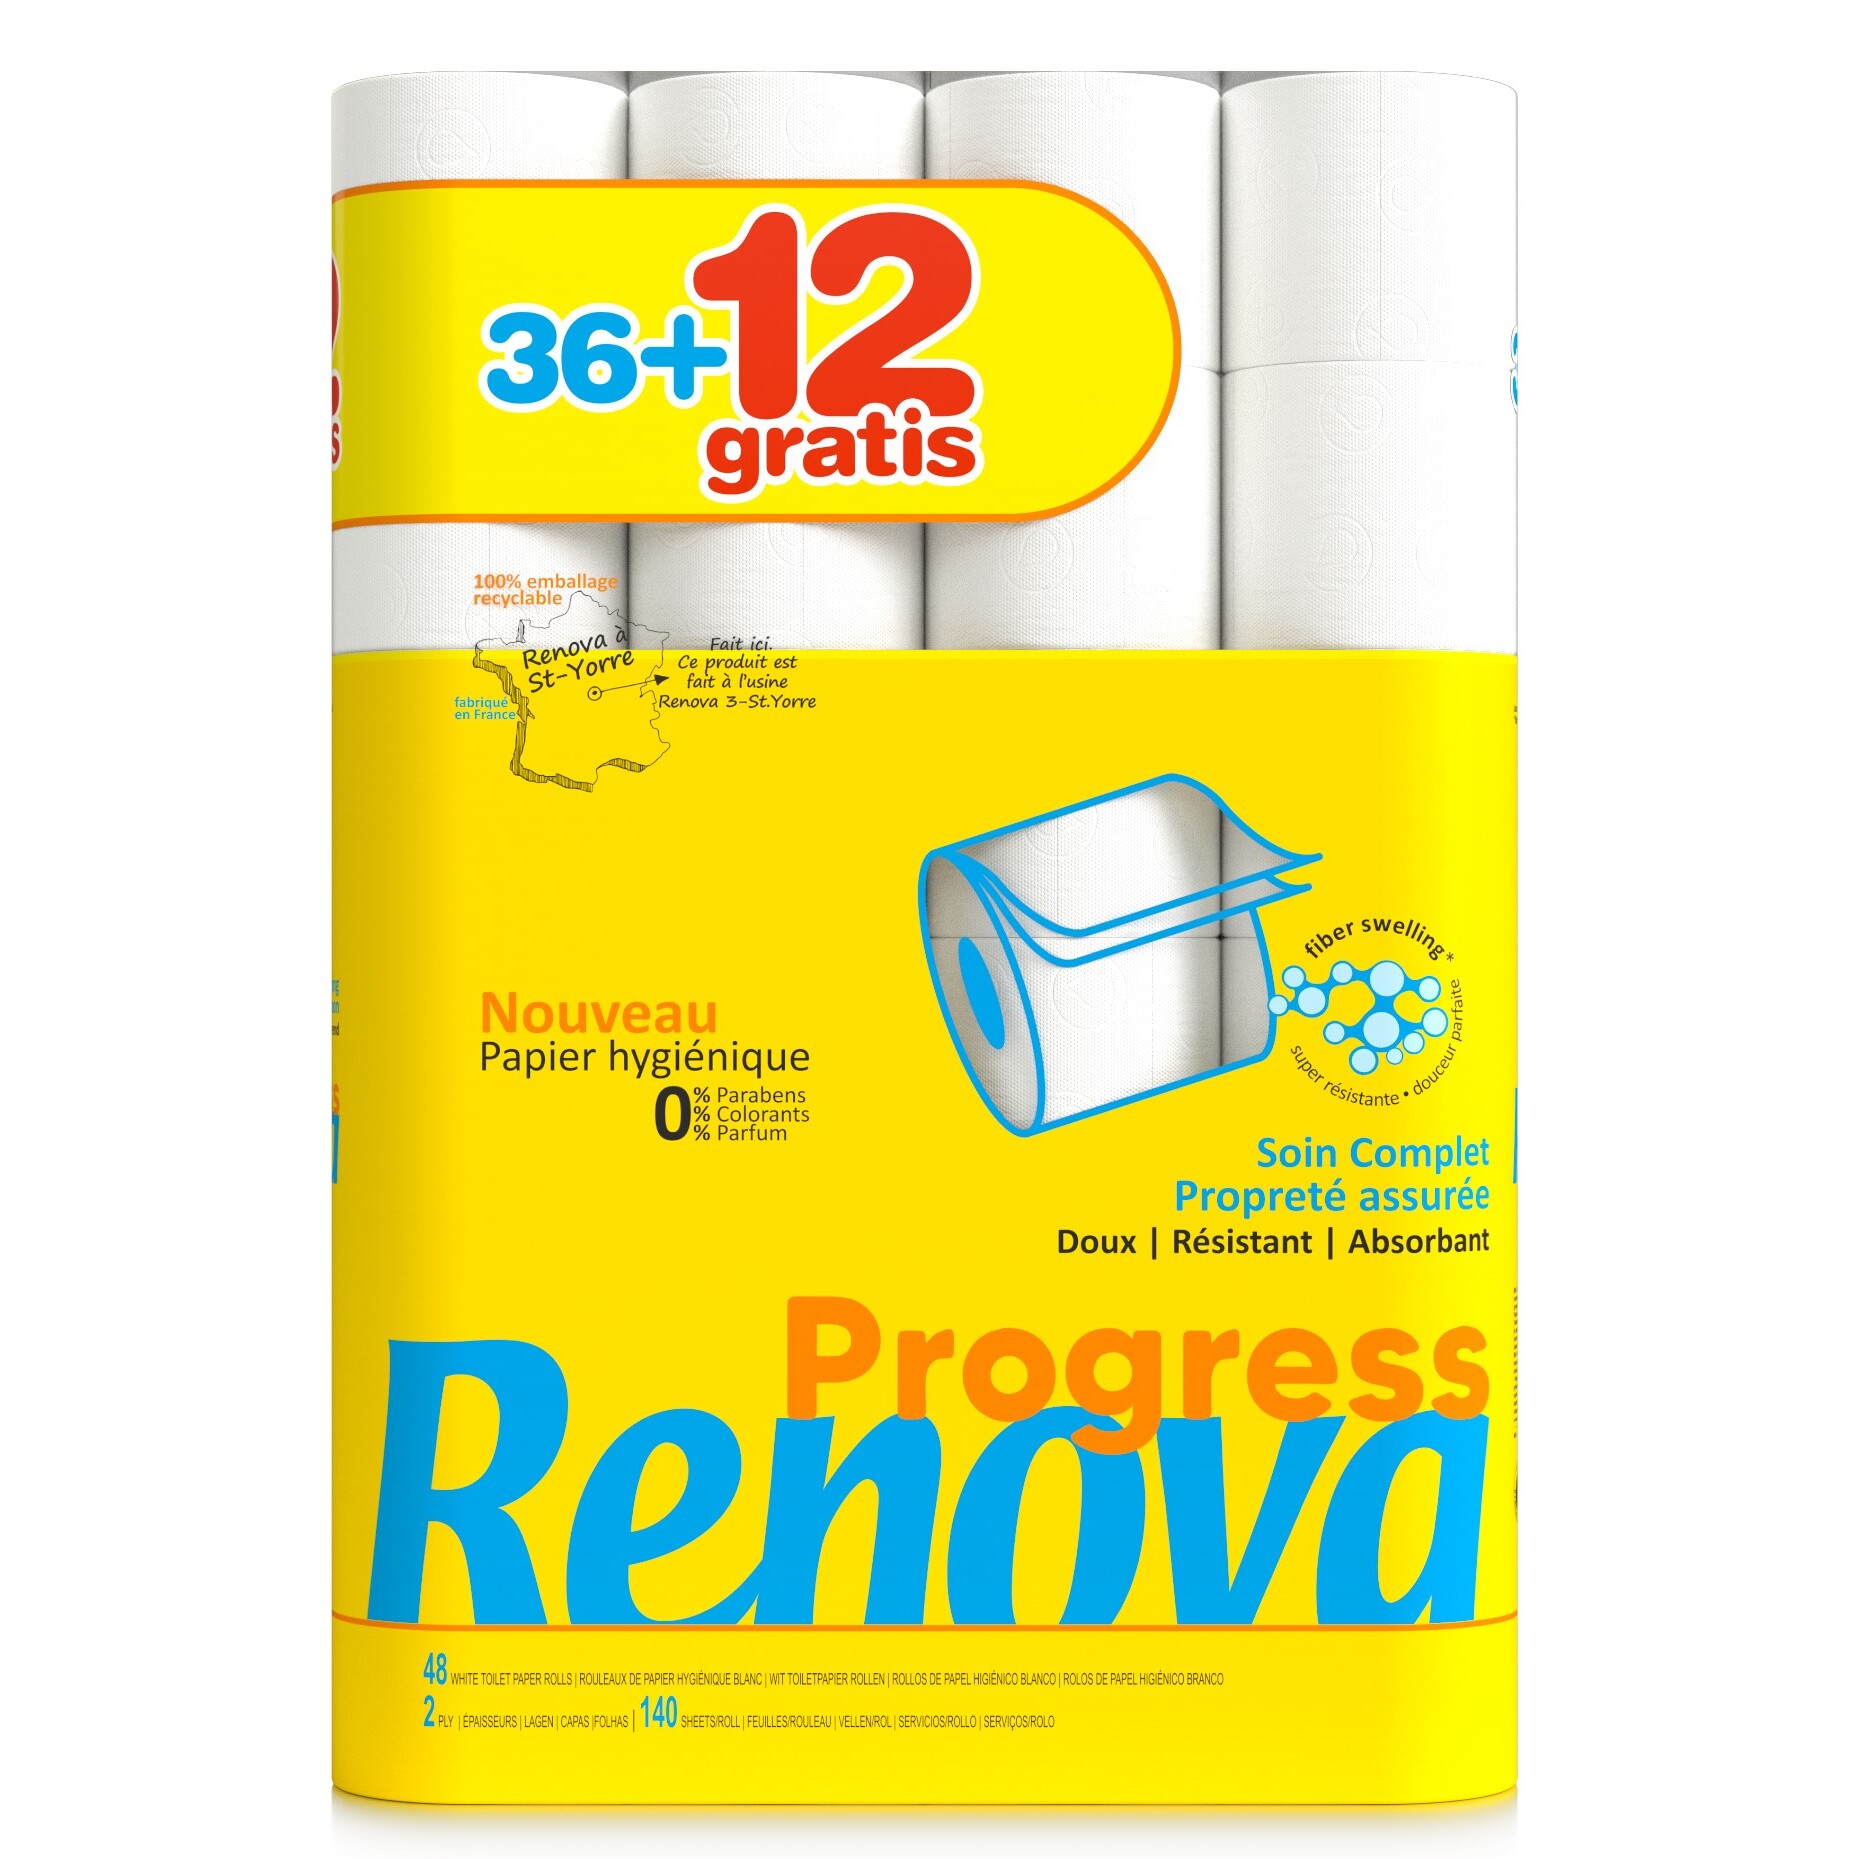 Auchan : 96 rouleaux de papier toilette Renova (48 / 48 gratuits